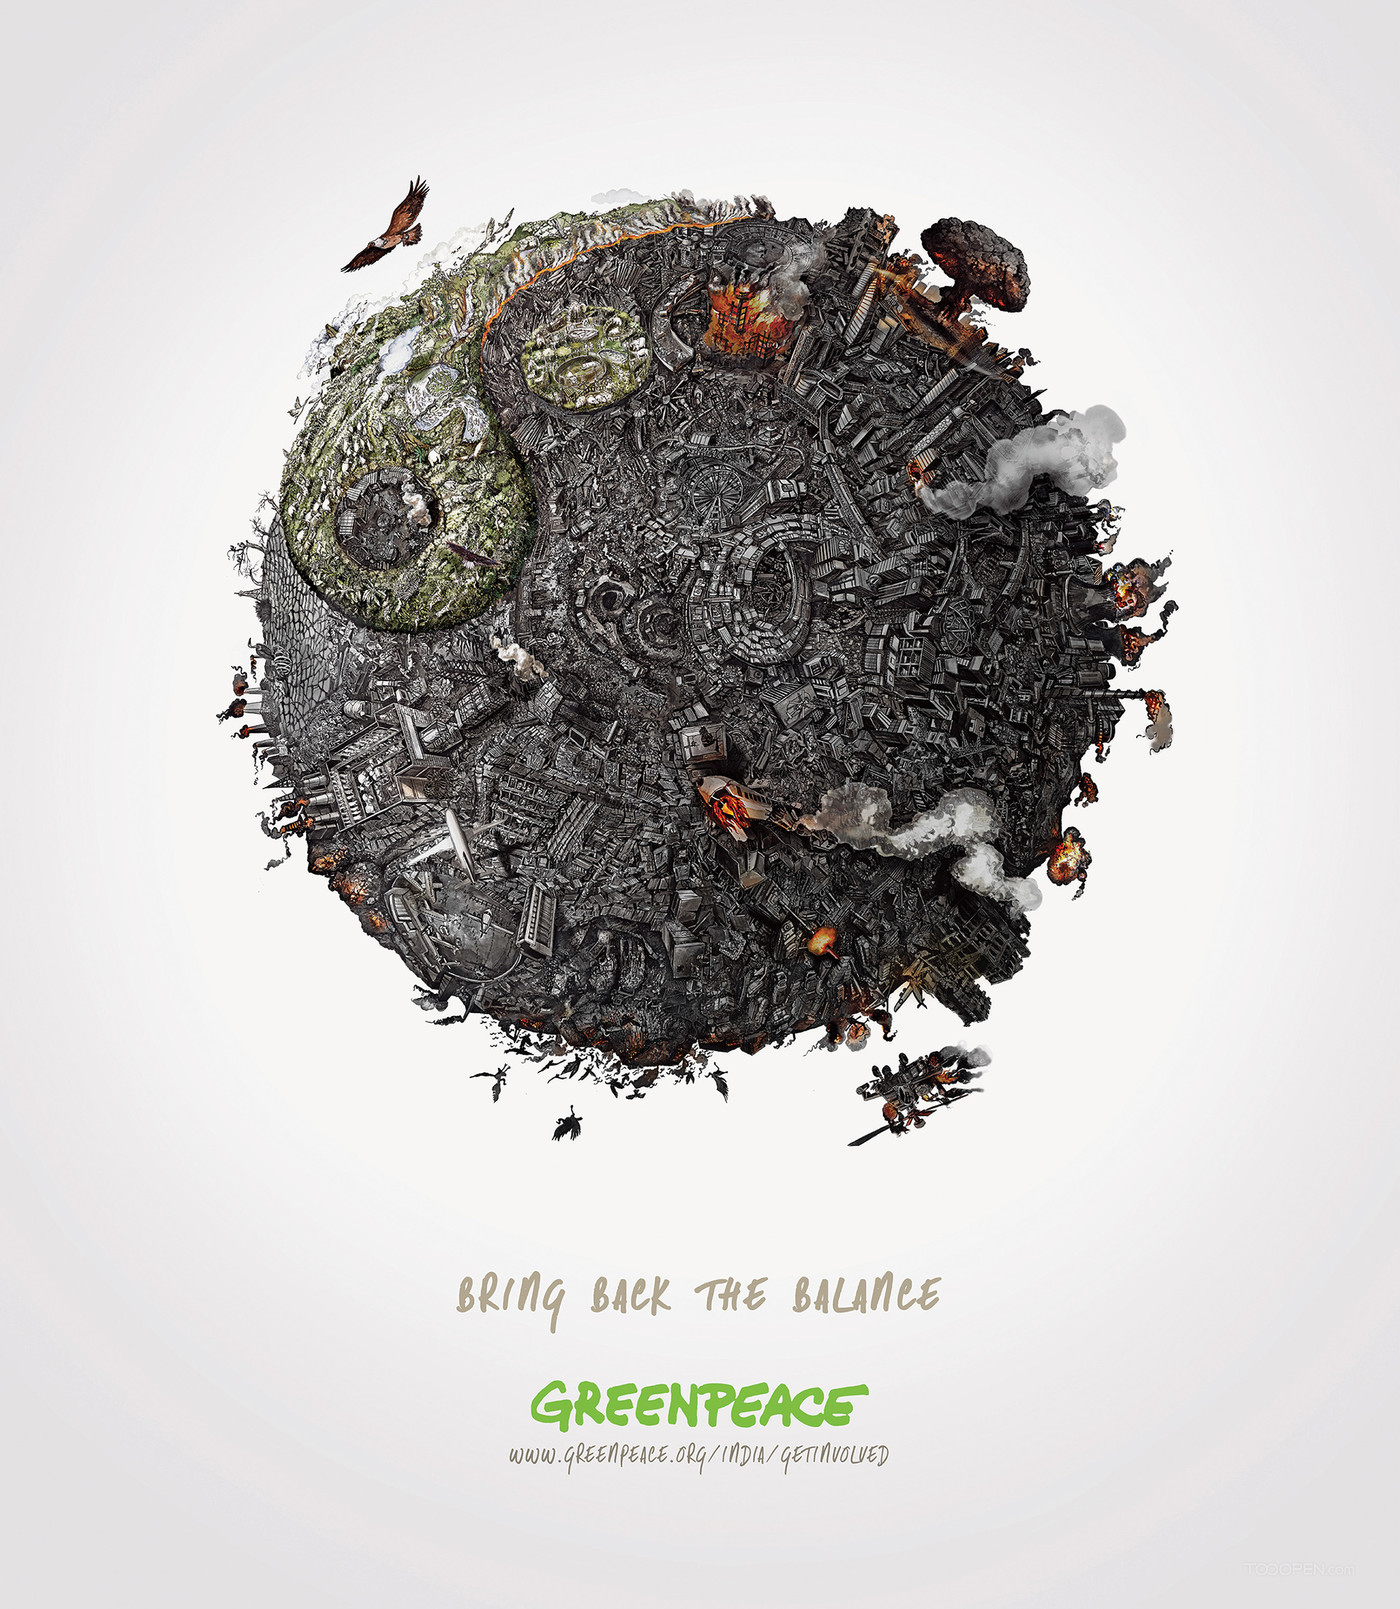 保护地球生态平衡公益海报设计欣赏-01